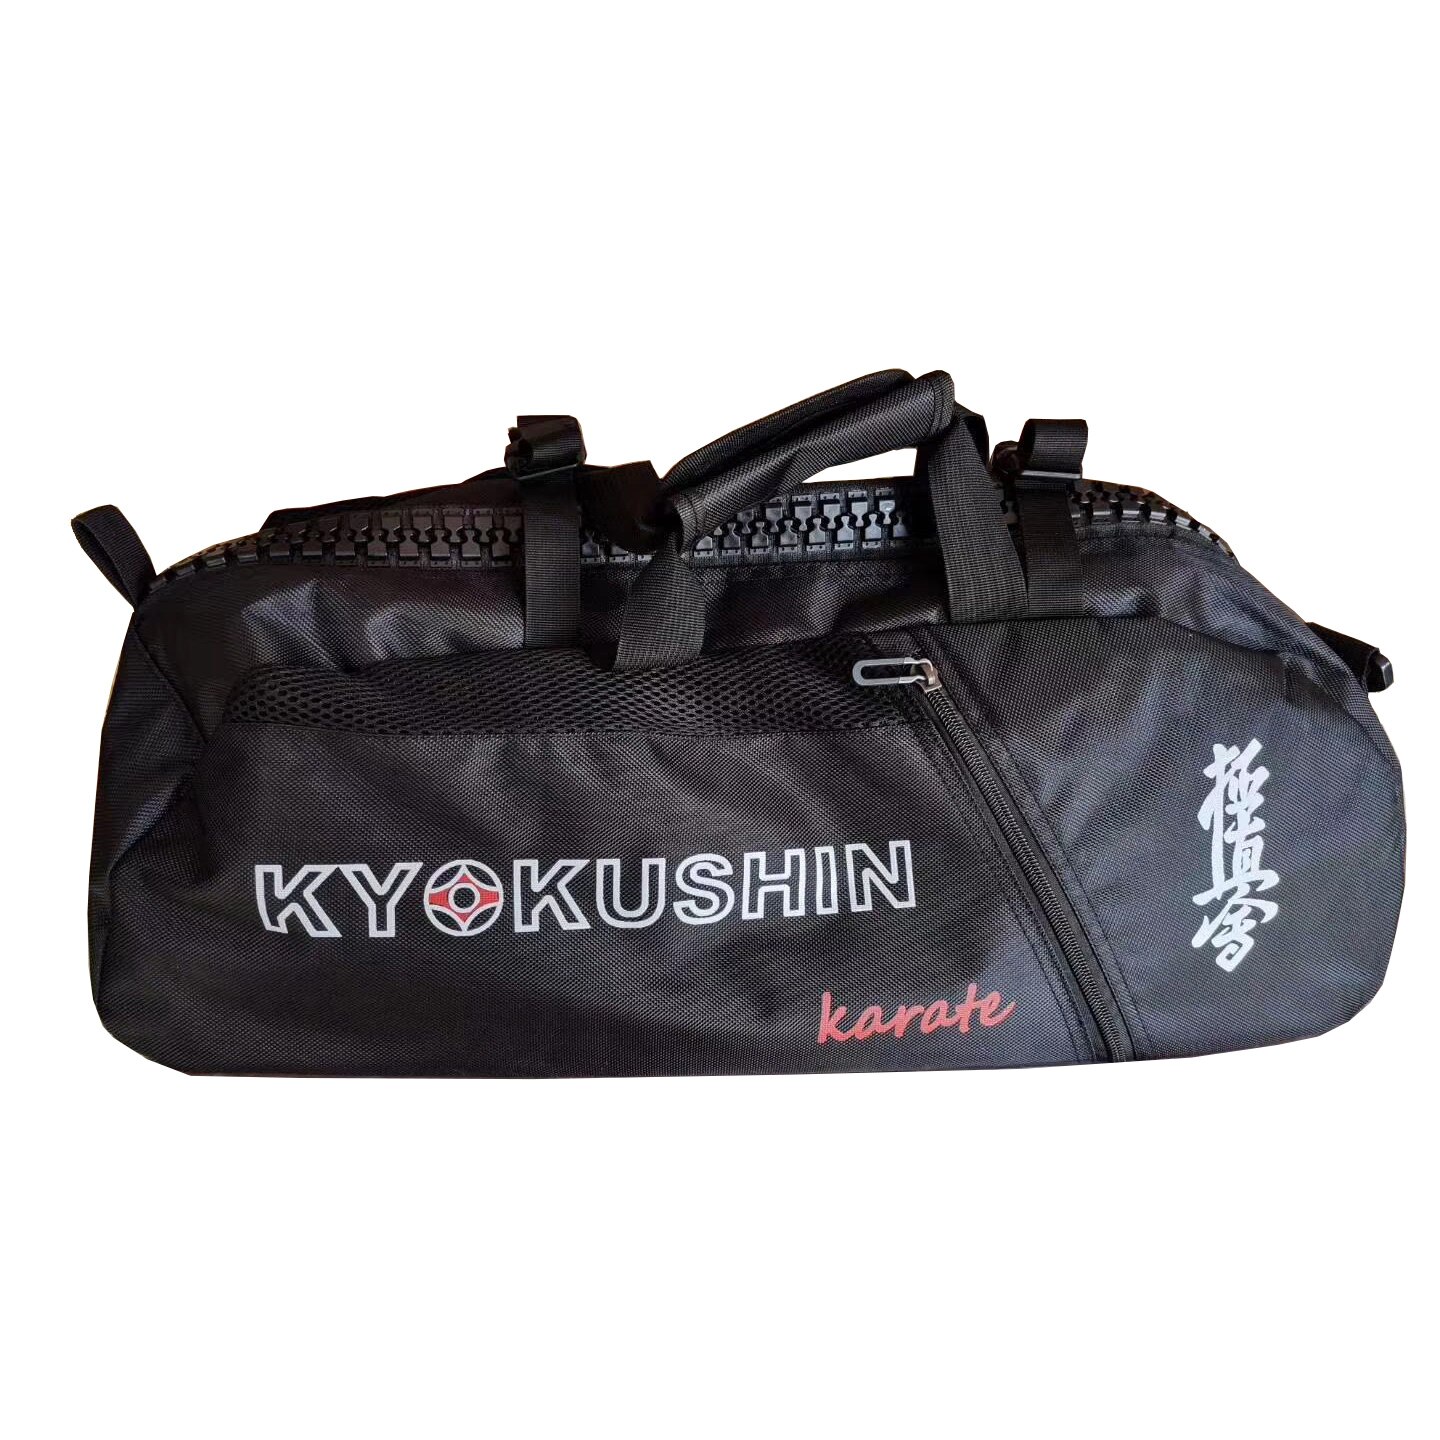 Karate kyokushin taske til træning kyokushinkai karate sport taske letvægts håndtaske multifunktionelle vandtætte rygsække